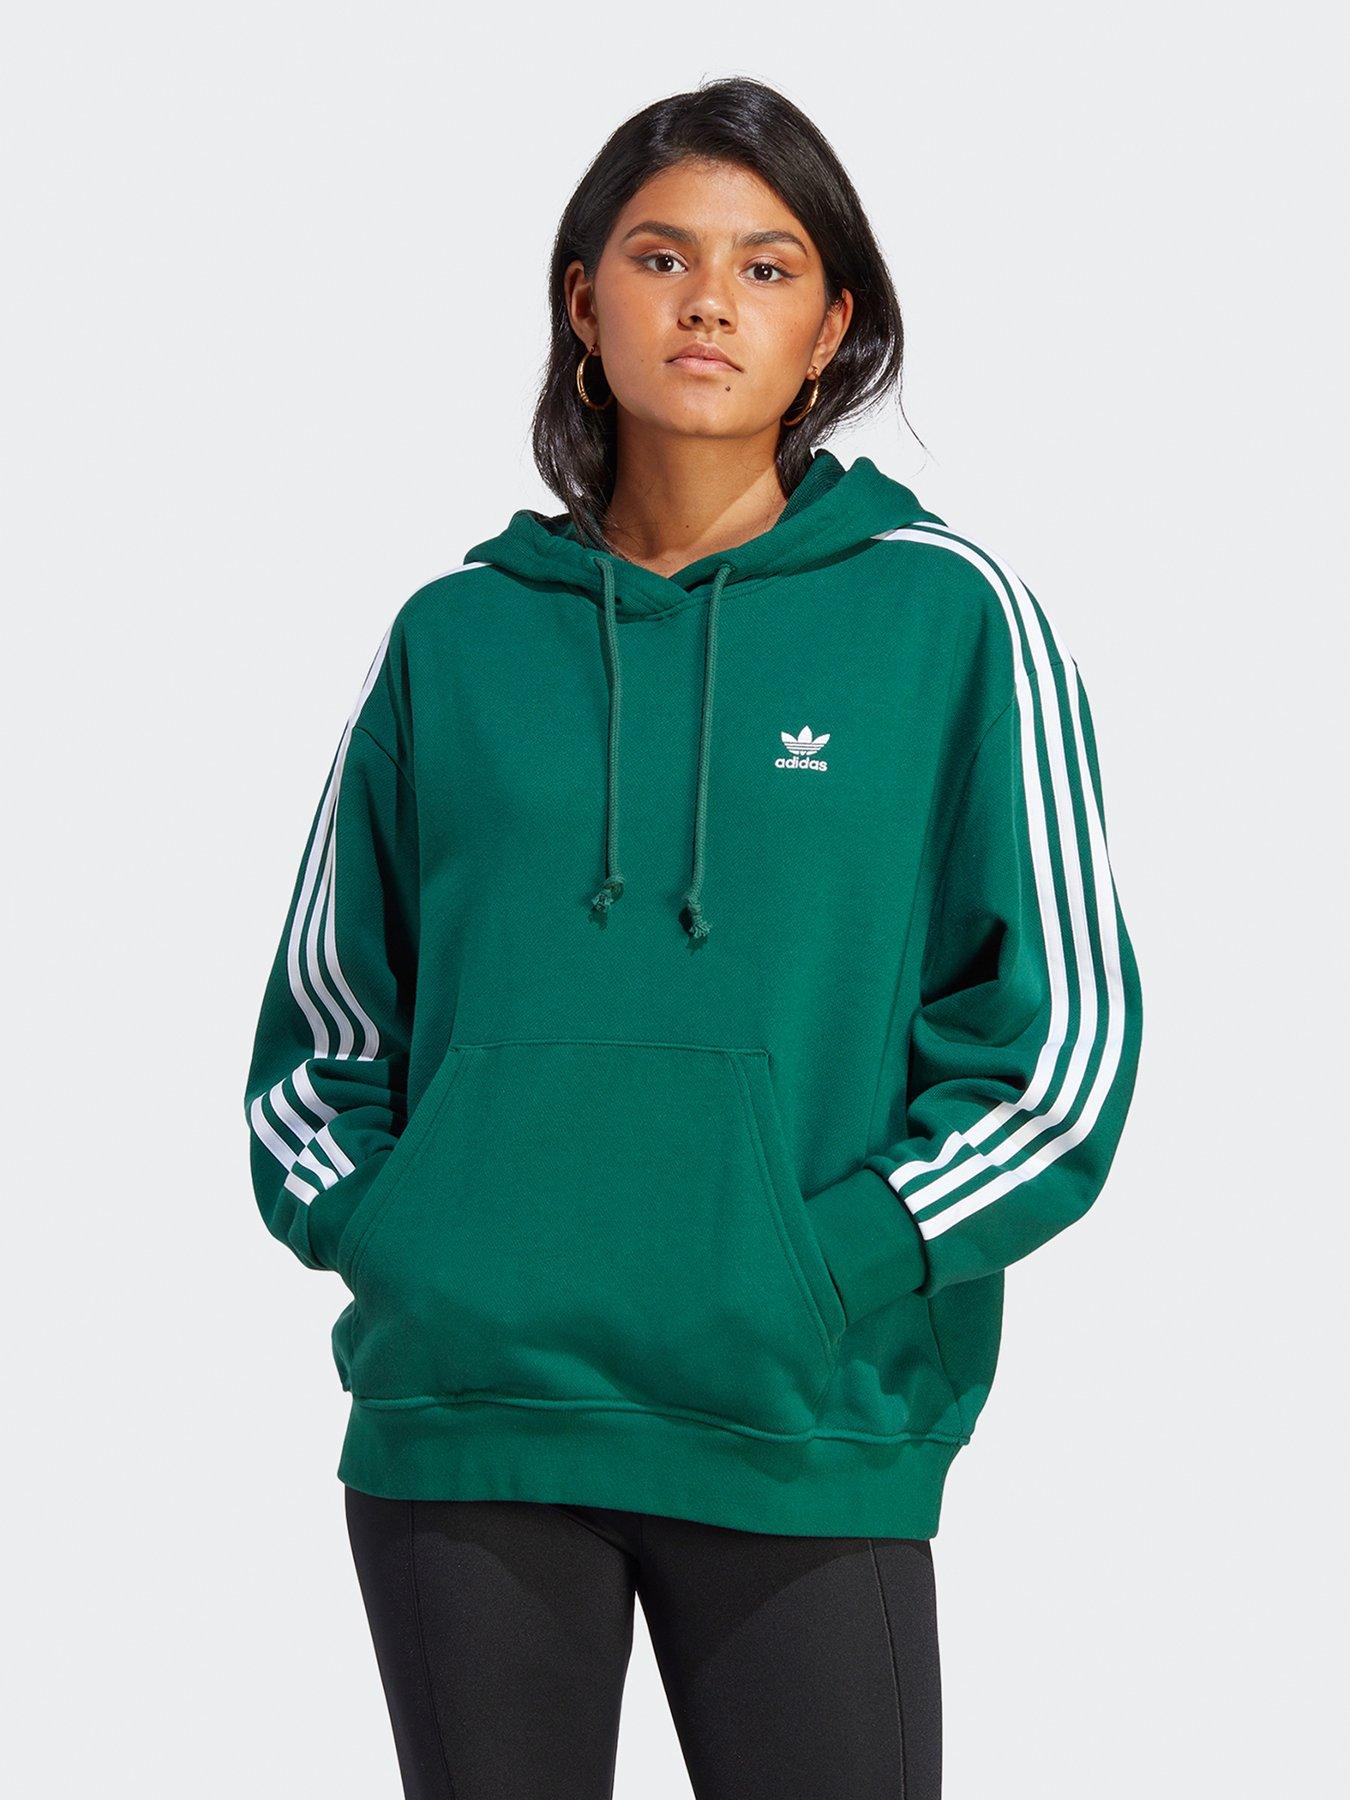 Adidas Hoodies sweatshirts | Sportswear | Women | www.very.co.uk